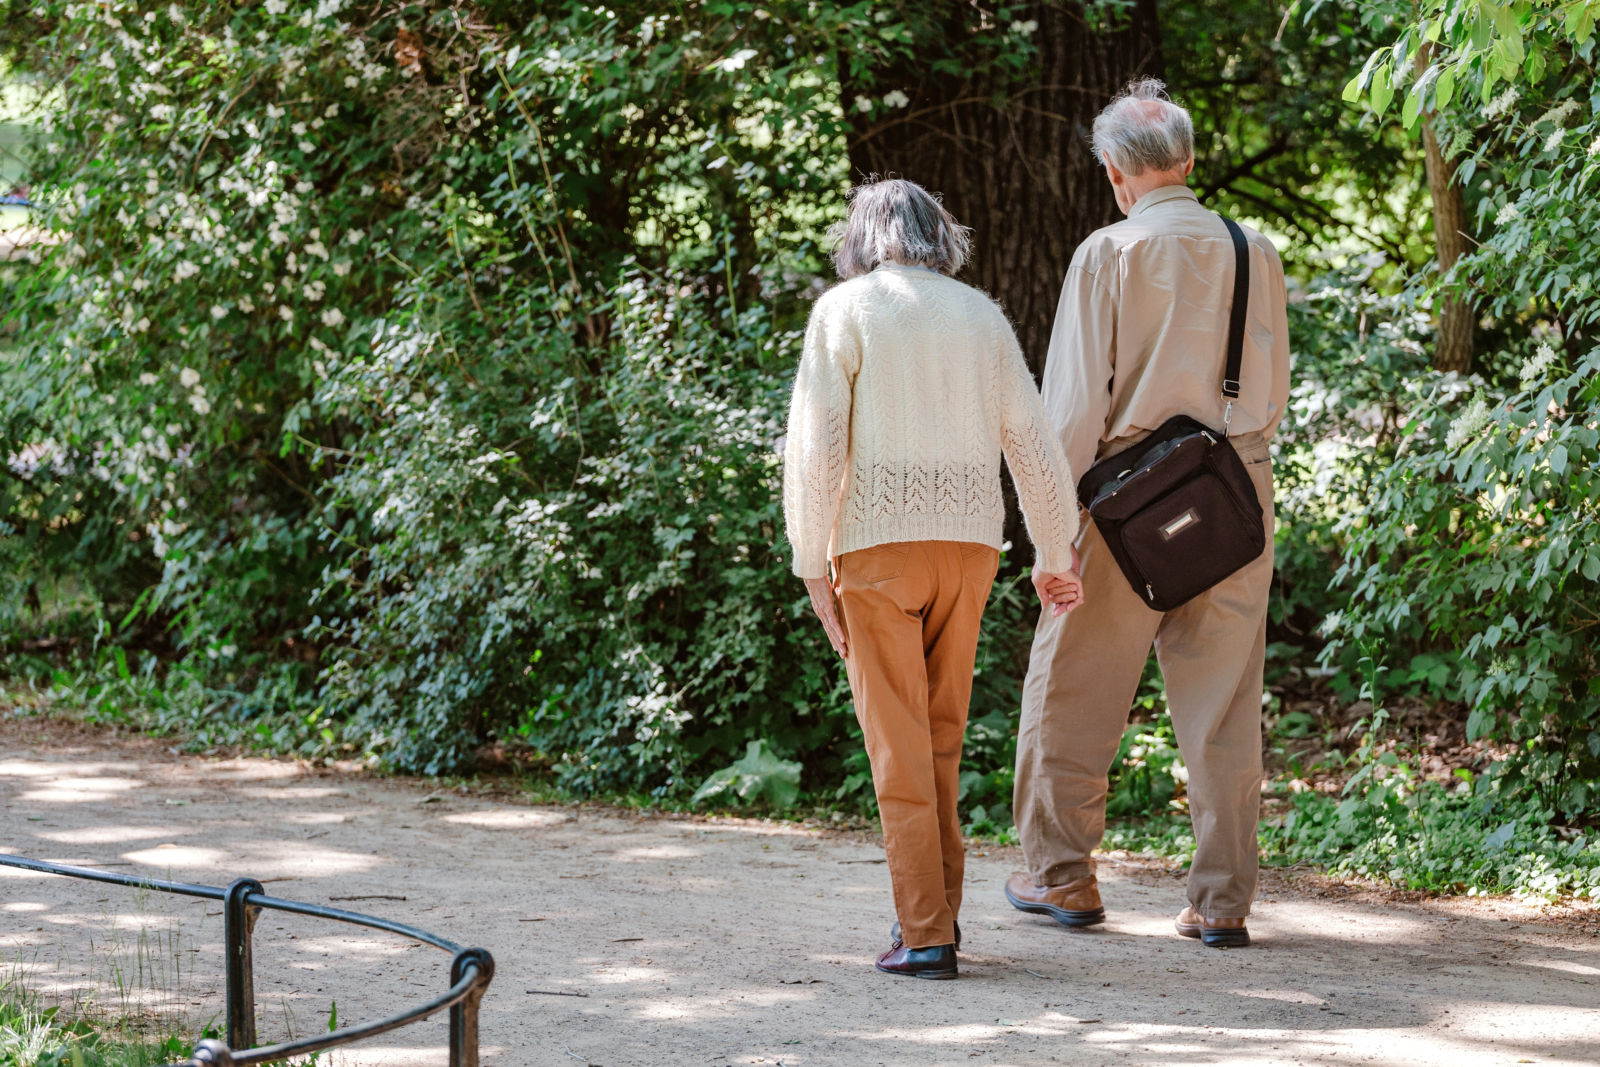 camminata veloce: meglio da soli o in gruppo? - Aging Project UniUPO